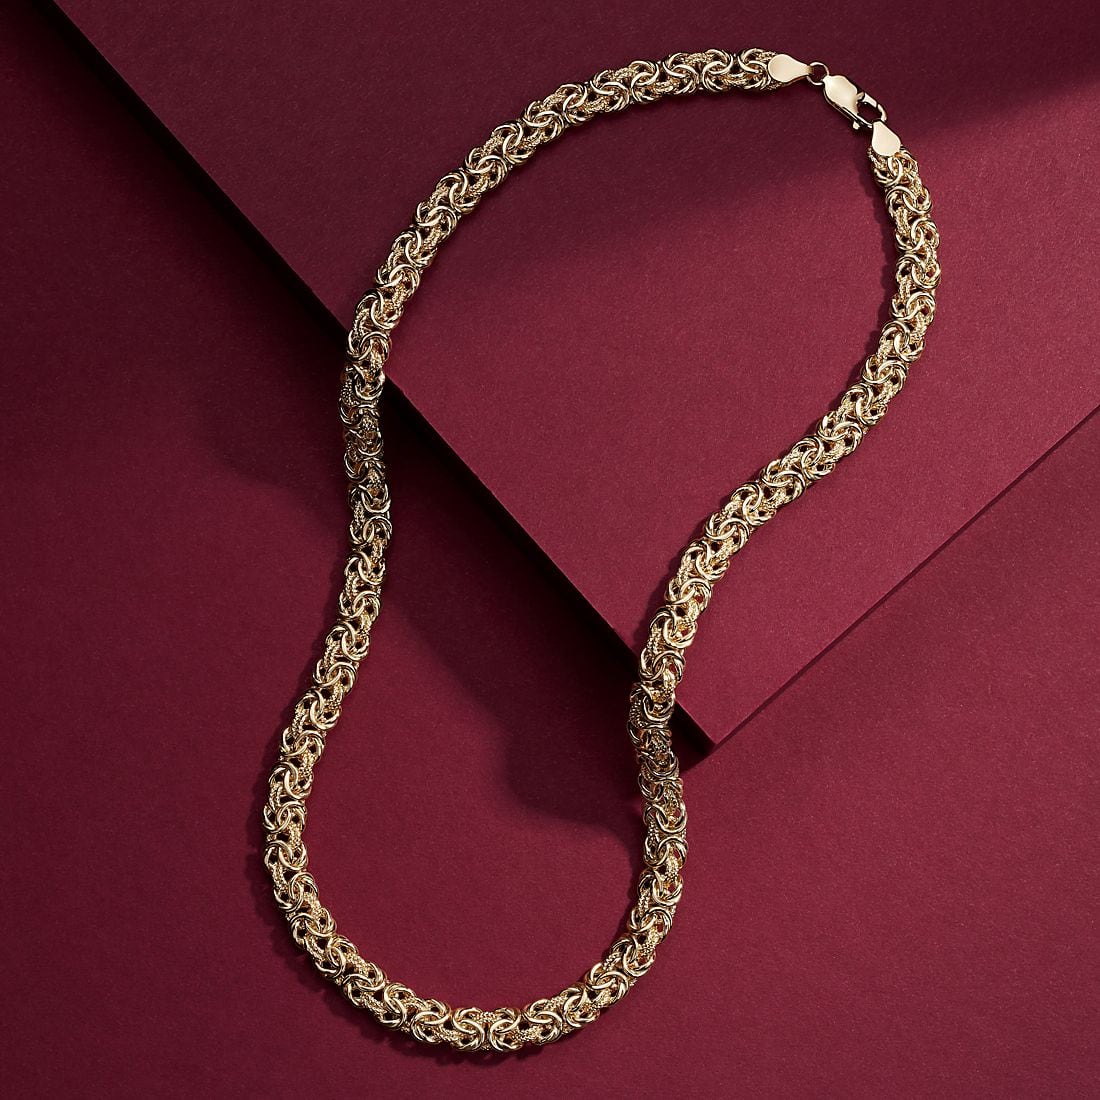 Byzantine Jewelry Chain